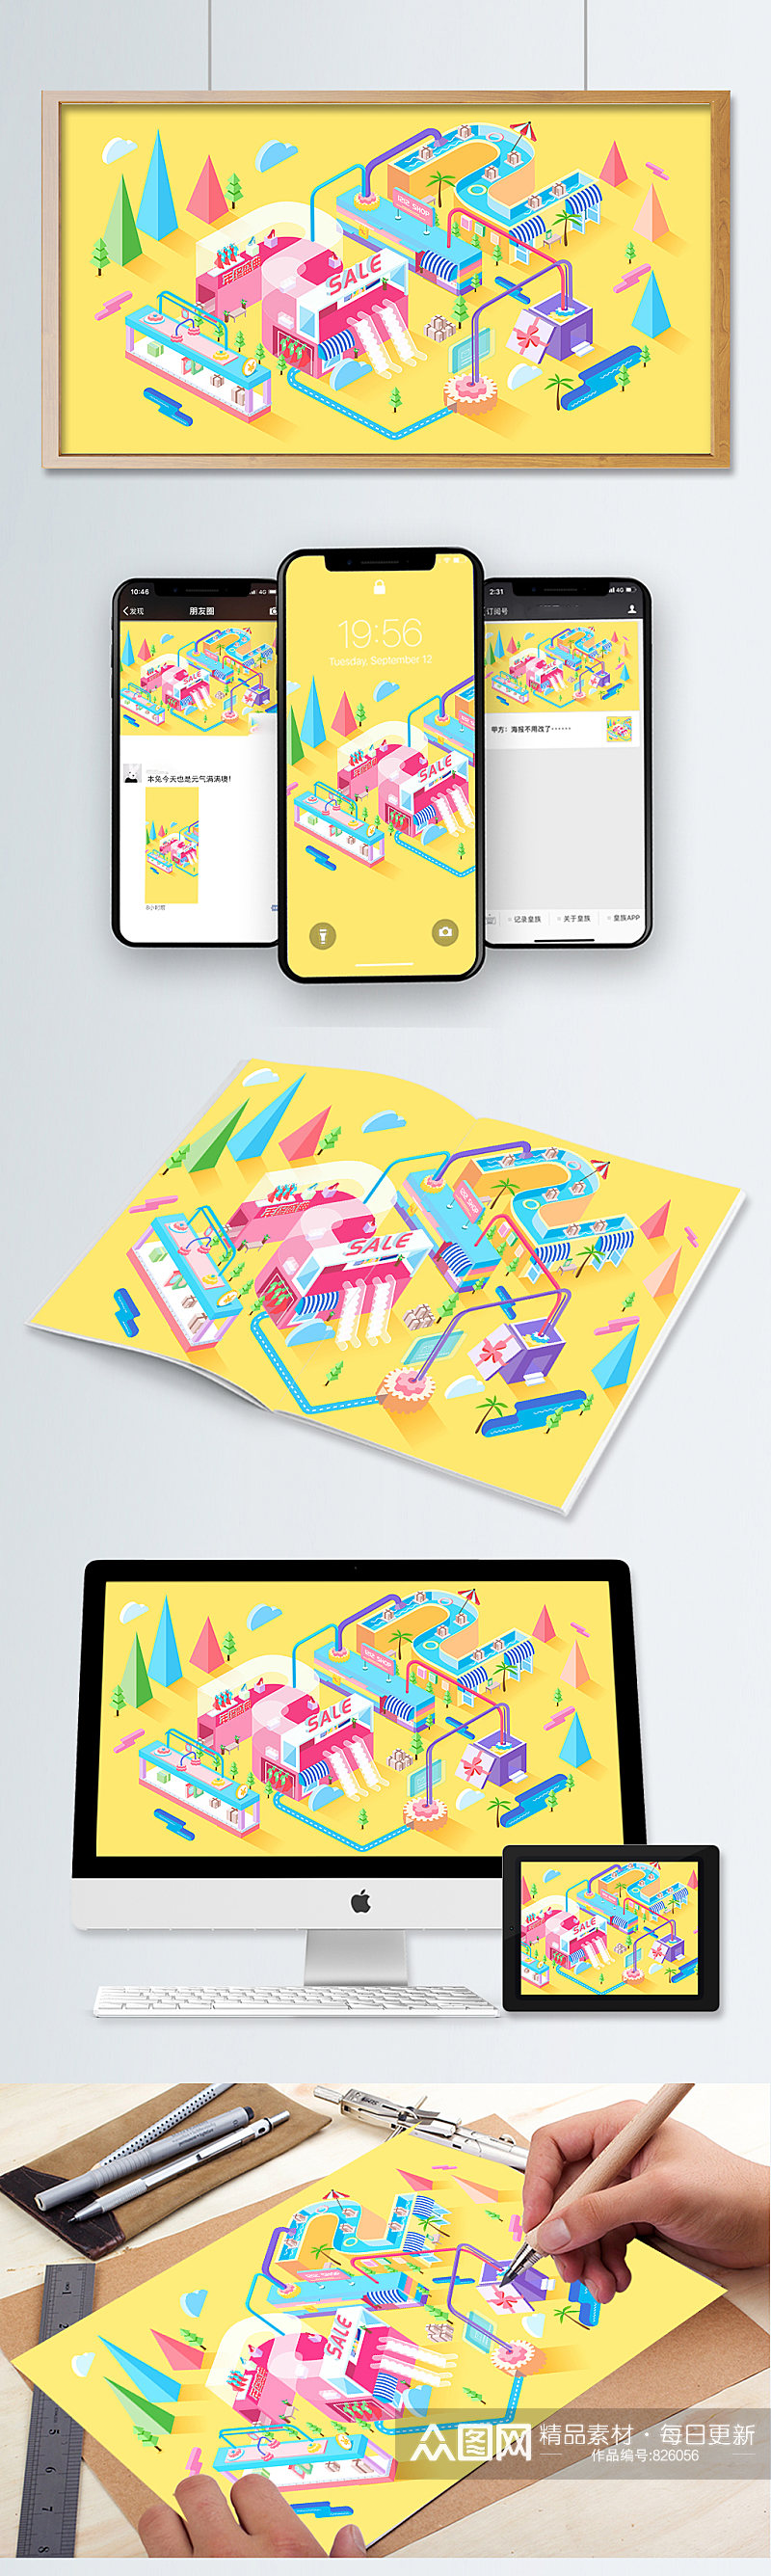 购物节手机网页UI黄色海报界面设计素材